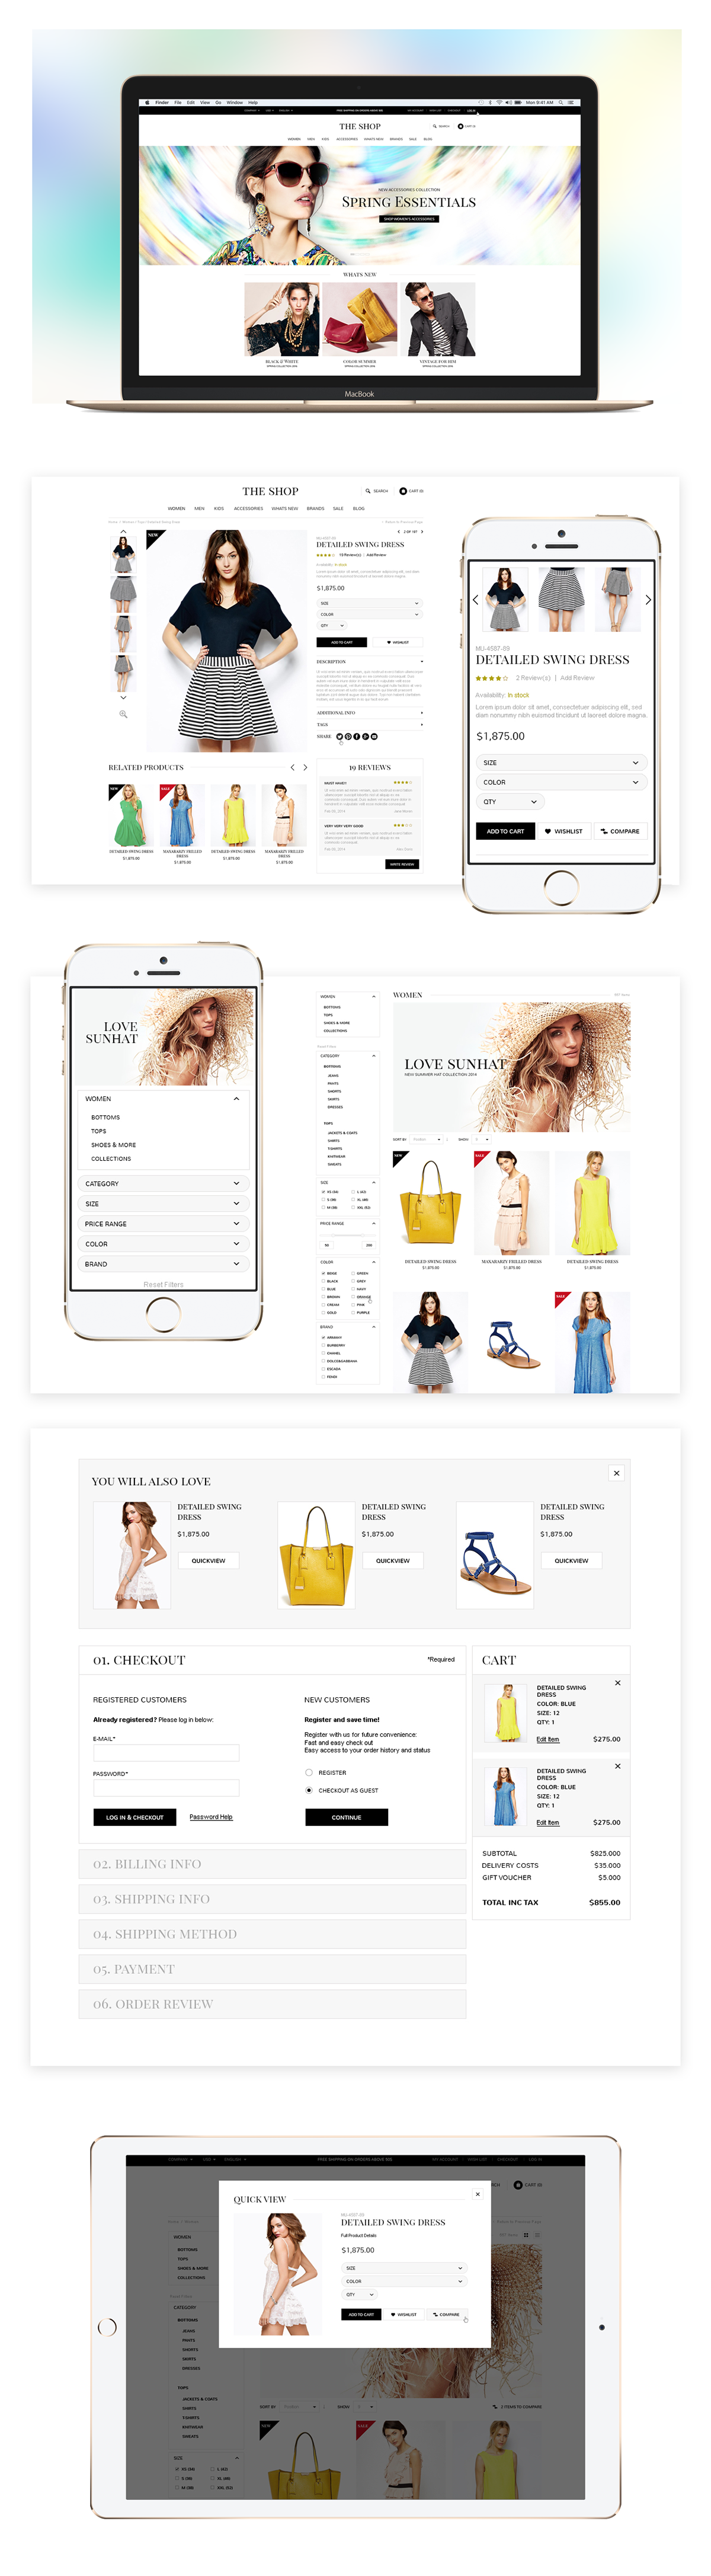 free psd e-commerce psd Fashion Store E-commerce Design free design e-commerce free psd